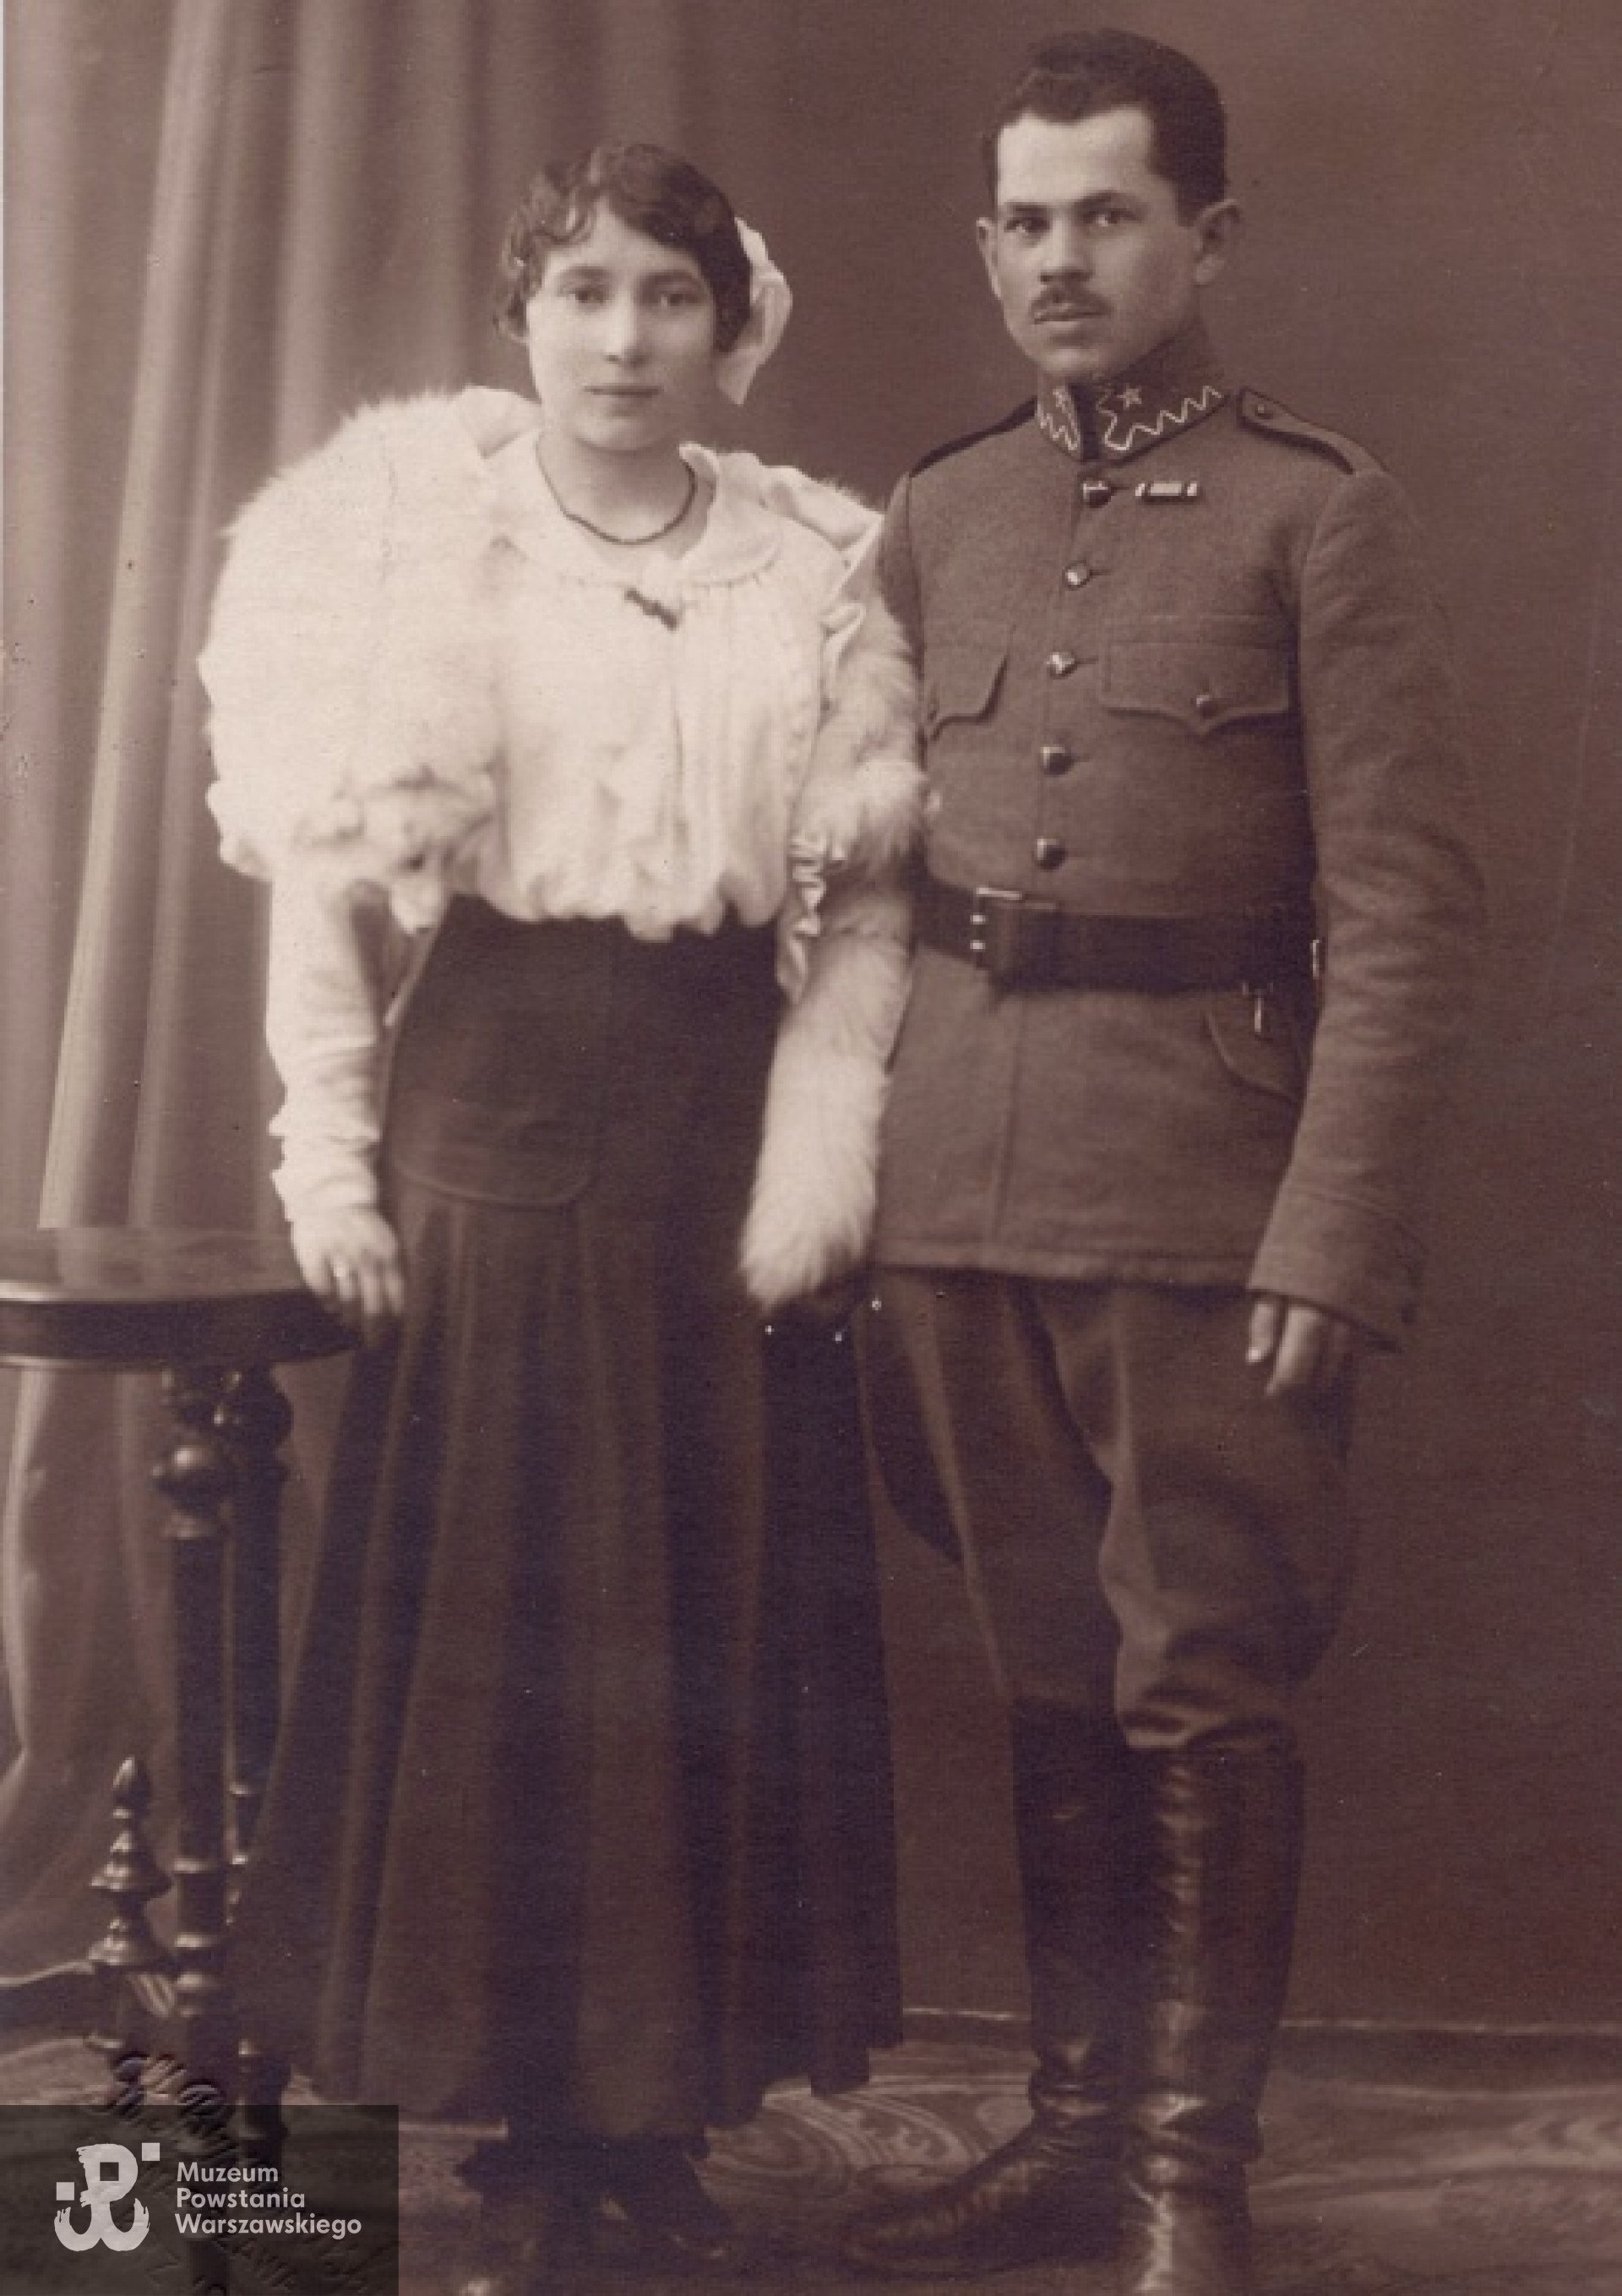 Kwiecień 1917 r. - przyszli rodzice: Aleksandra i Ignacy Wąsowicz w dniu ślubu